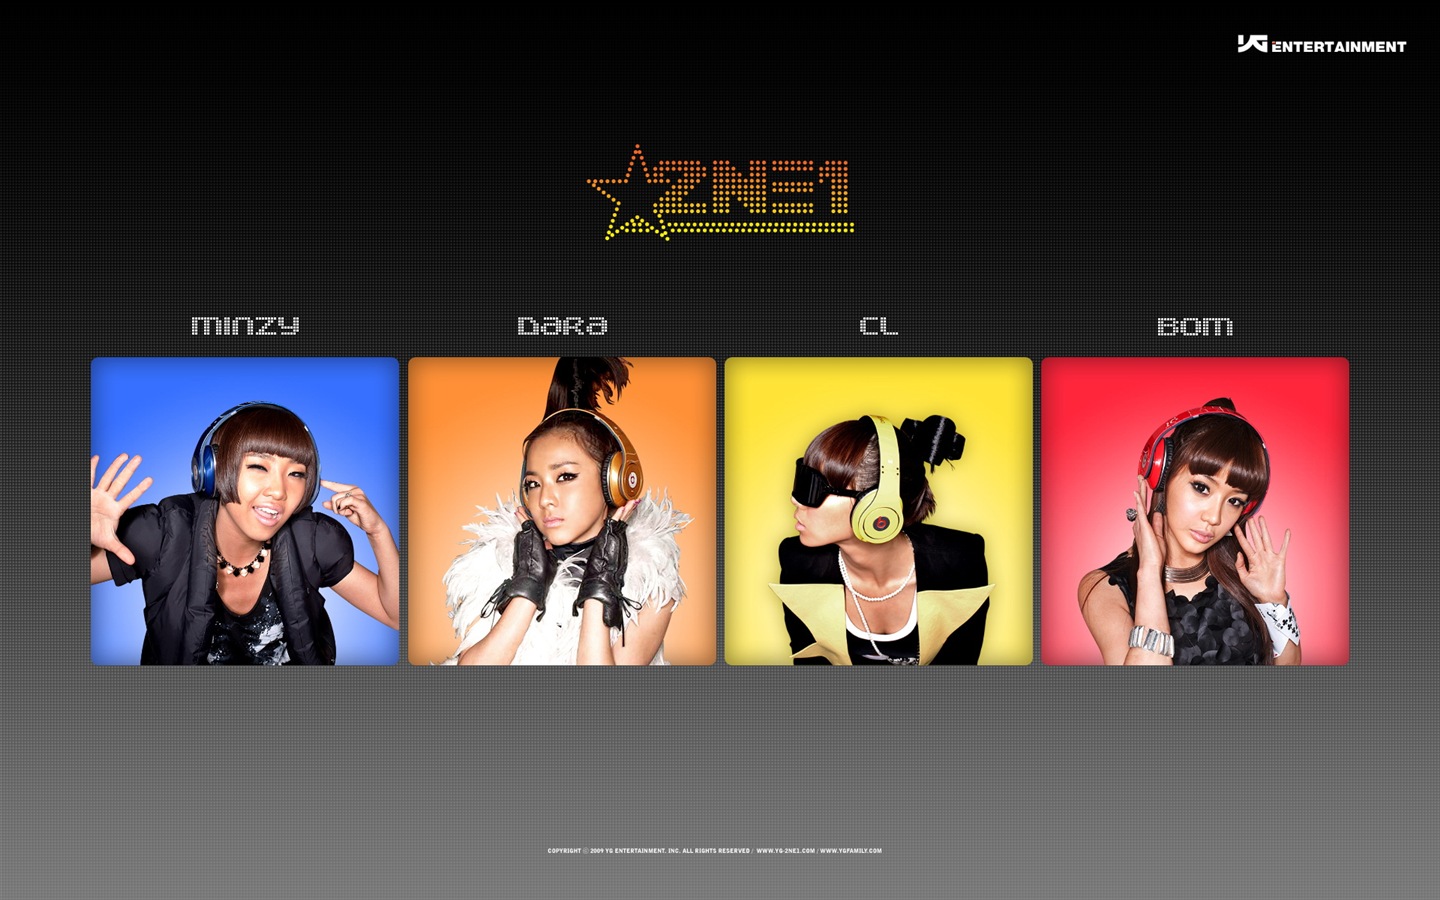 韩国音乐女孩组合 2NE1 高清壁纸16 - 1440x900